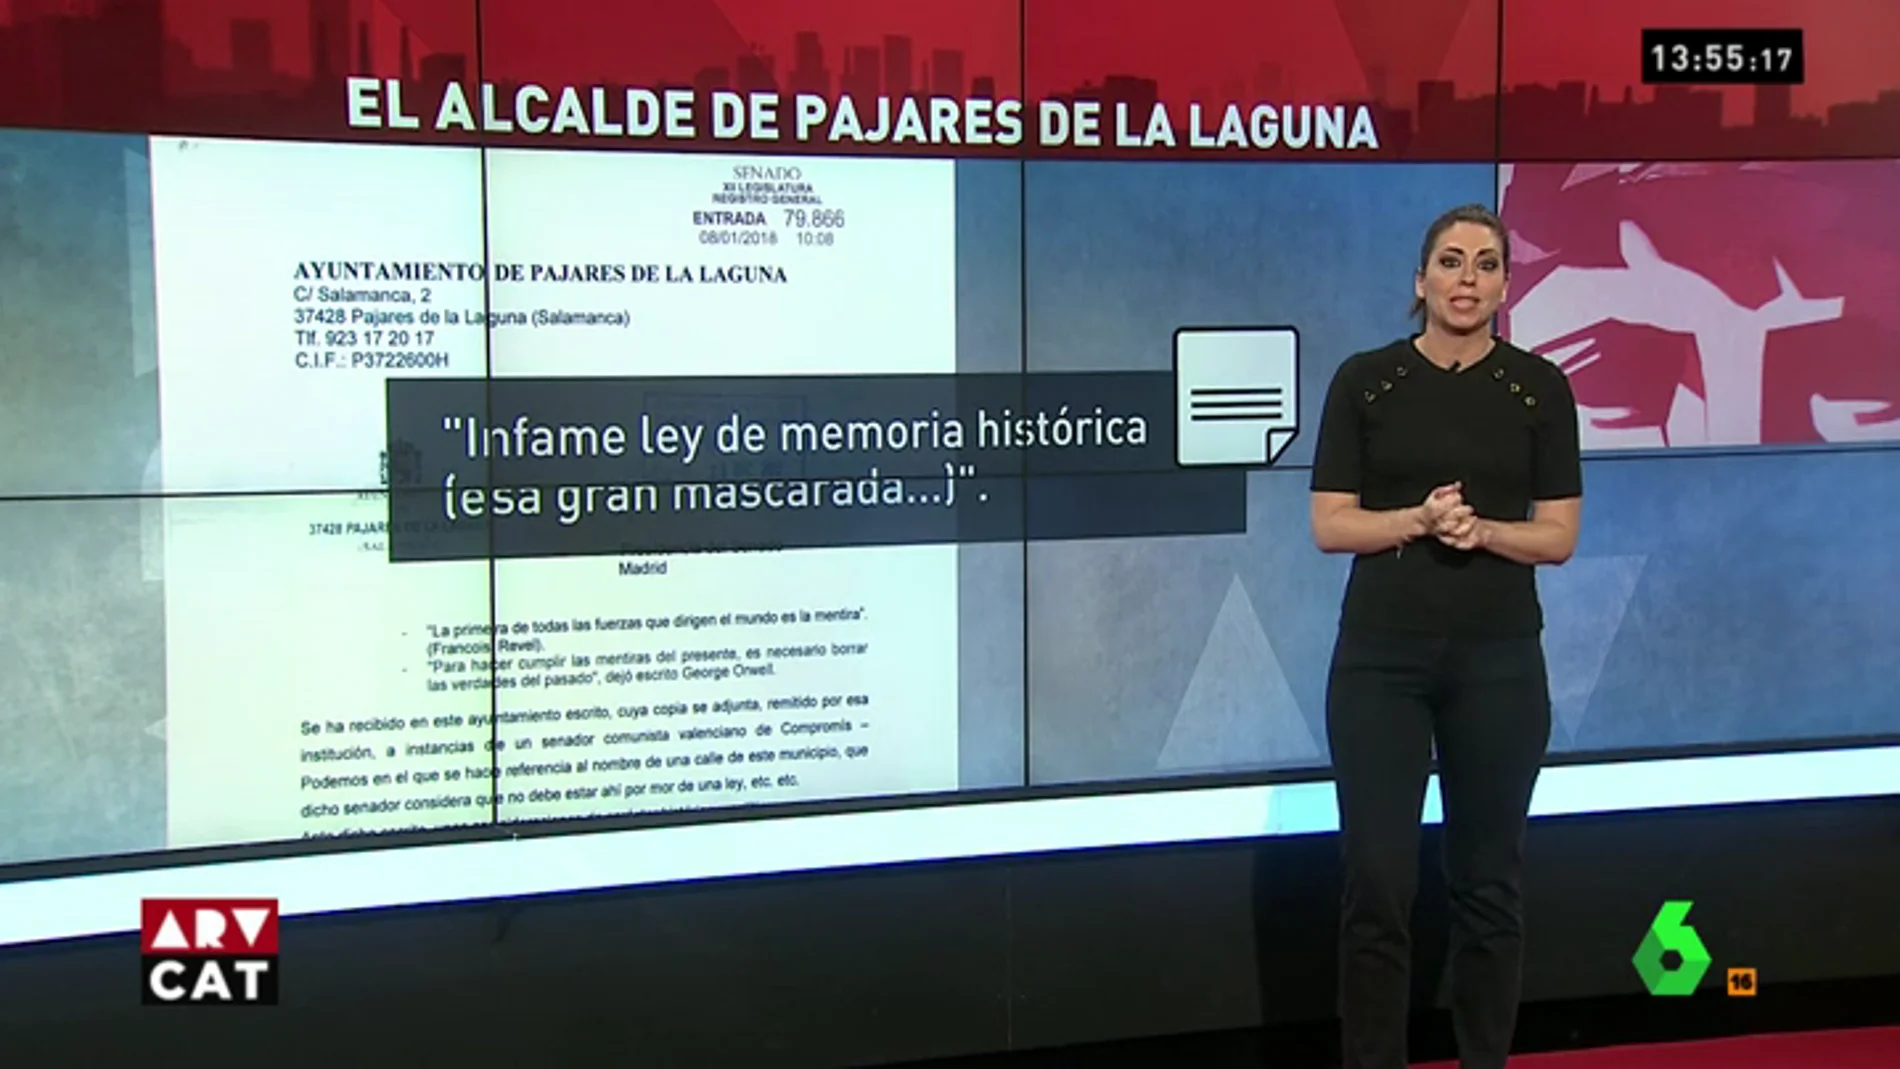 "Ley de Memoria Histérica", "Zapatero es un indigente mental", "proterroristas"… las polémicas palabras del alcalde del PP de Pajares de la Laguna 